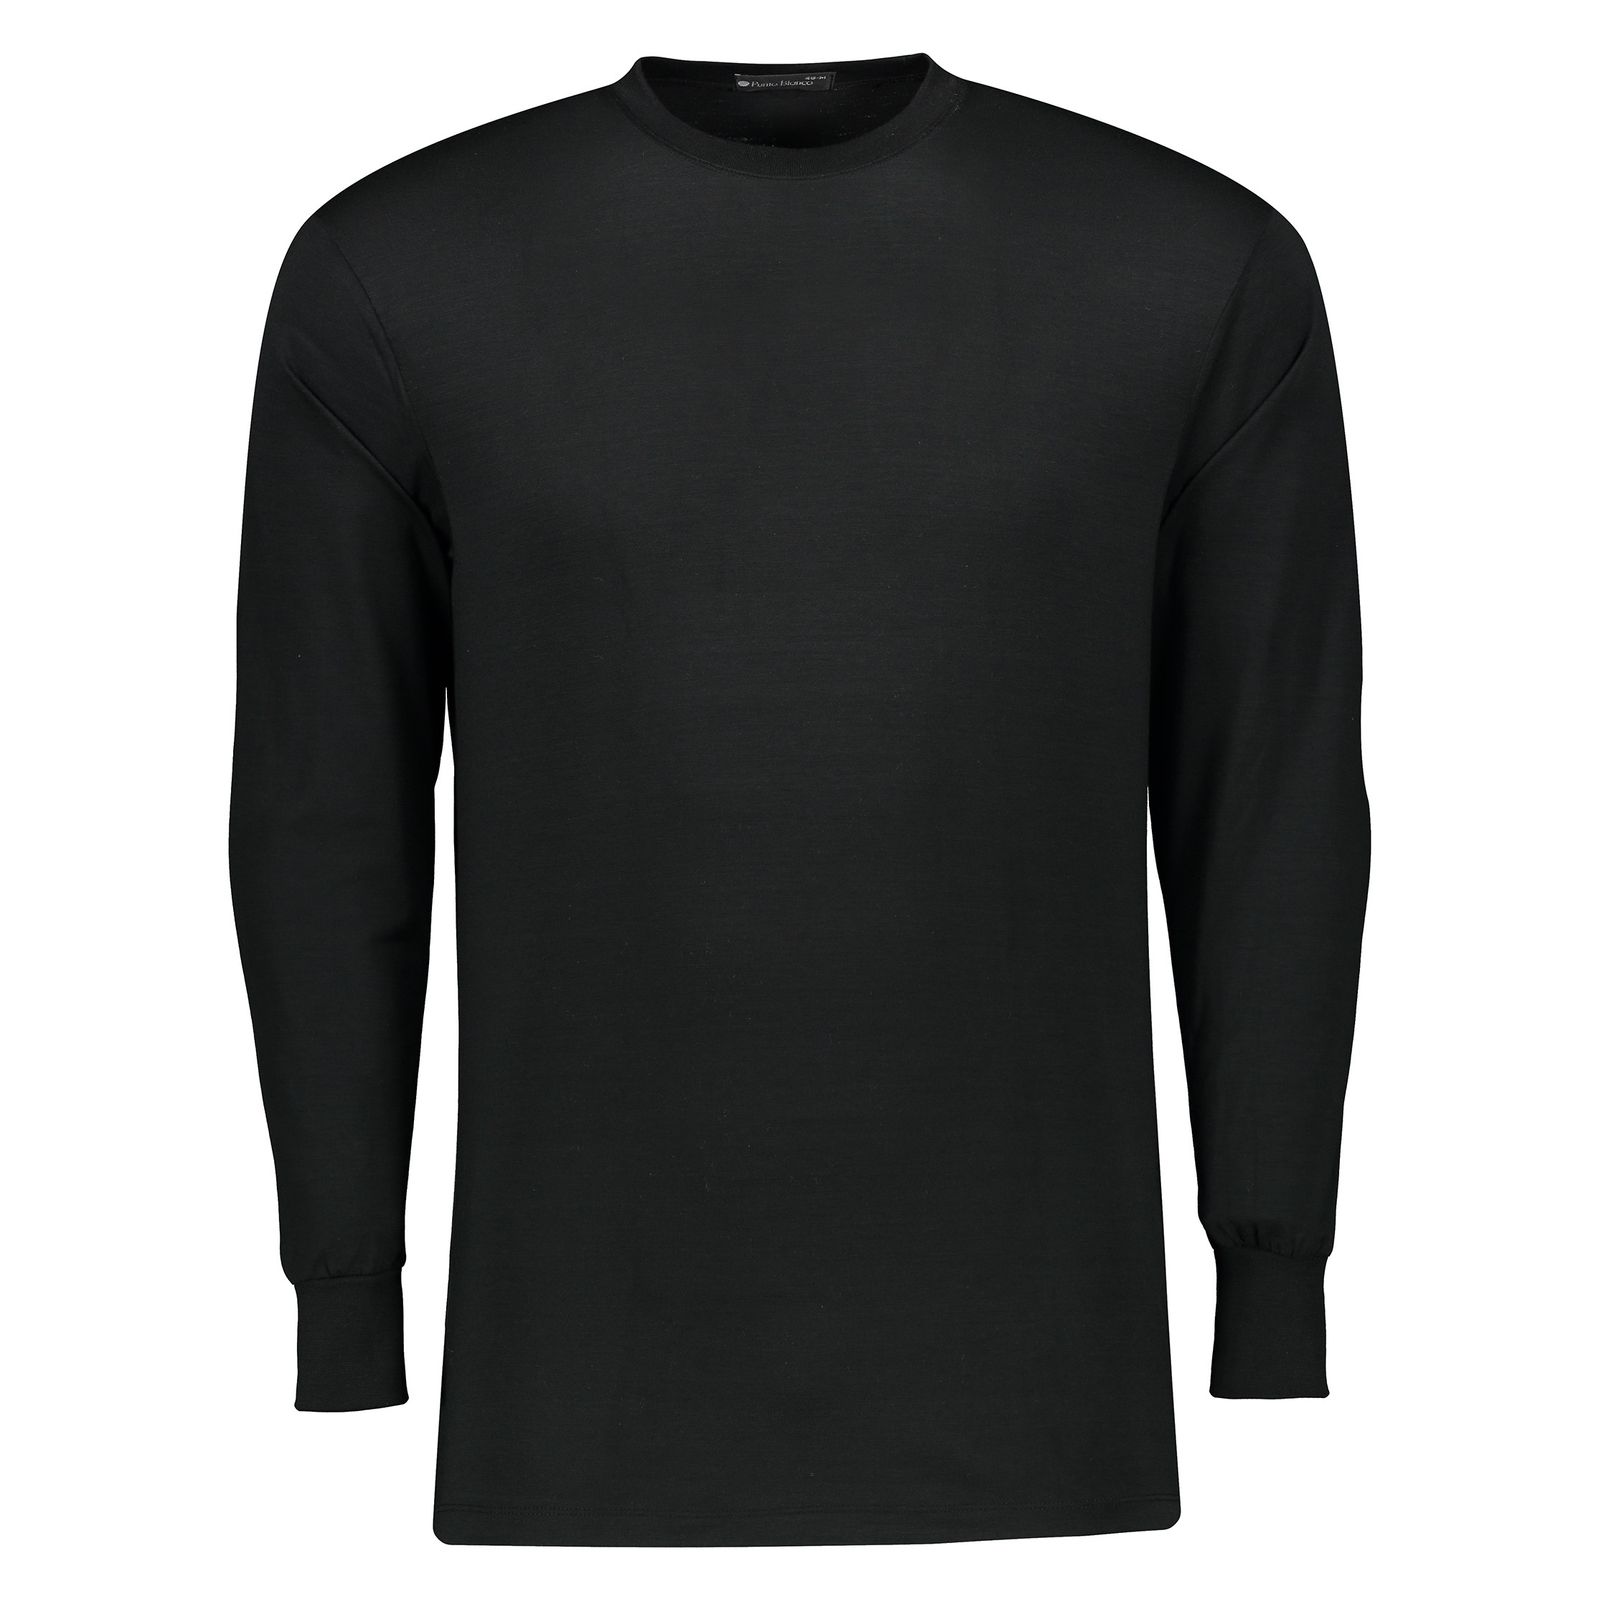 تی شرت راحتی مردانه پونتو بلانکو کد 33179-20-090 -  - 1